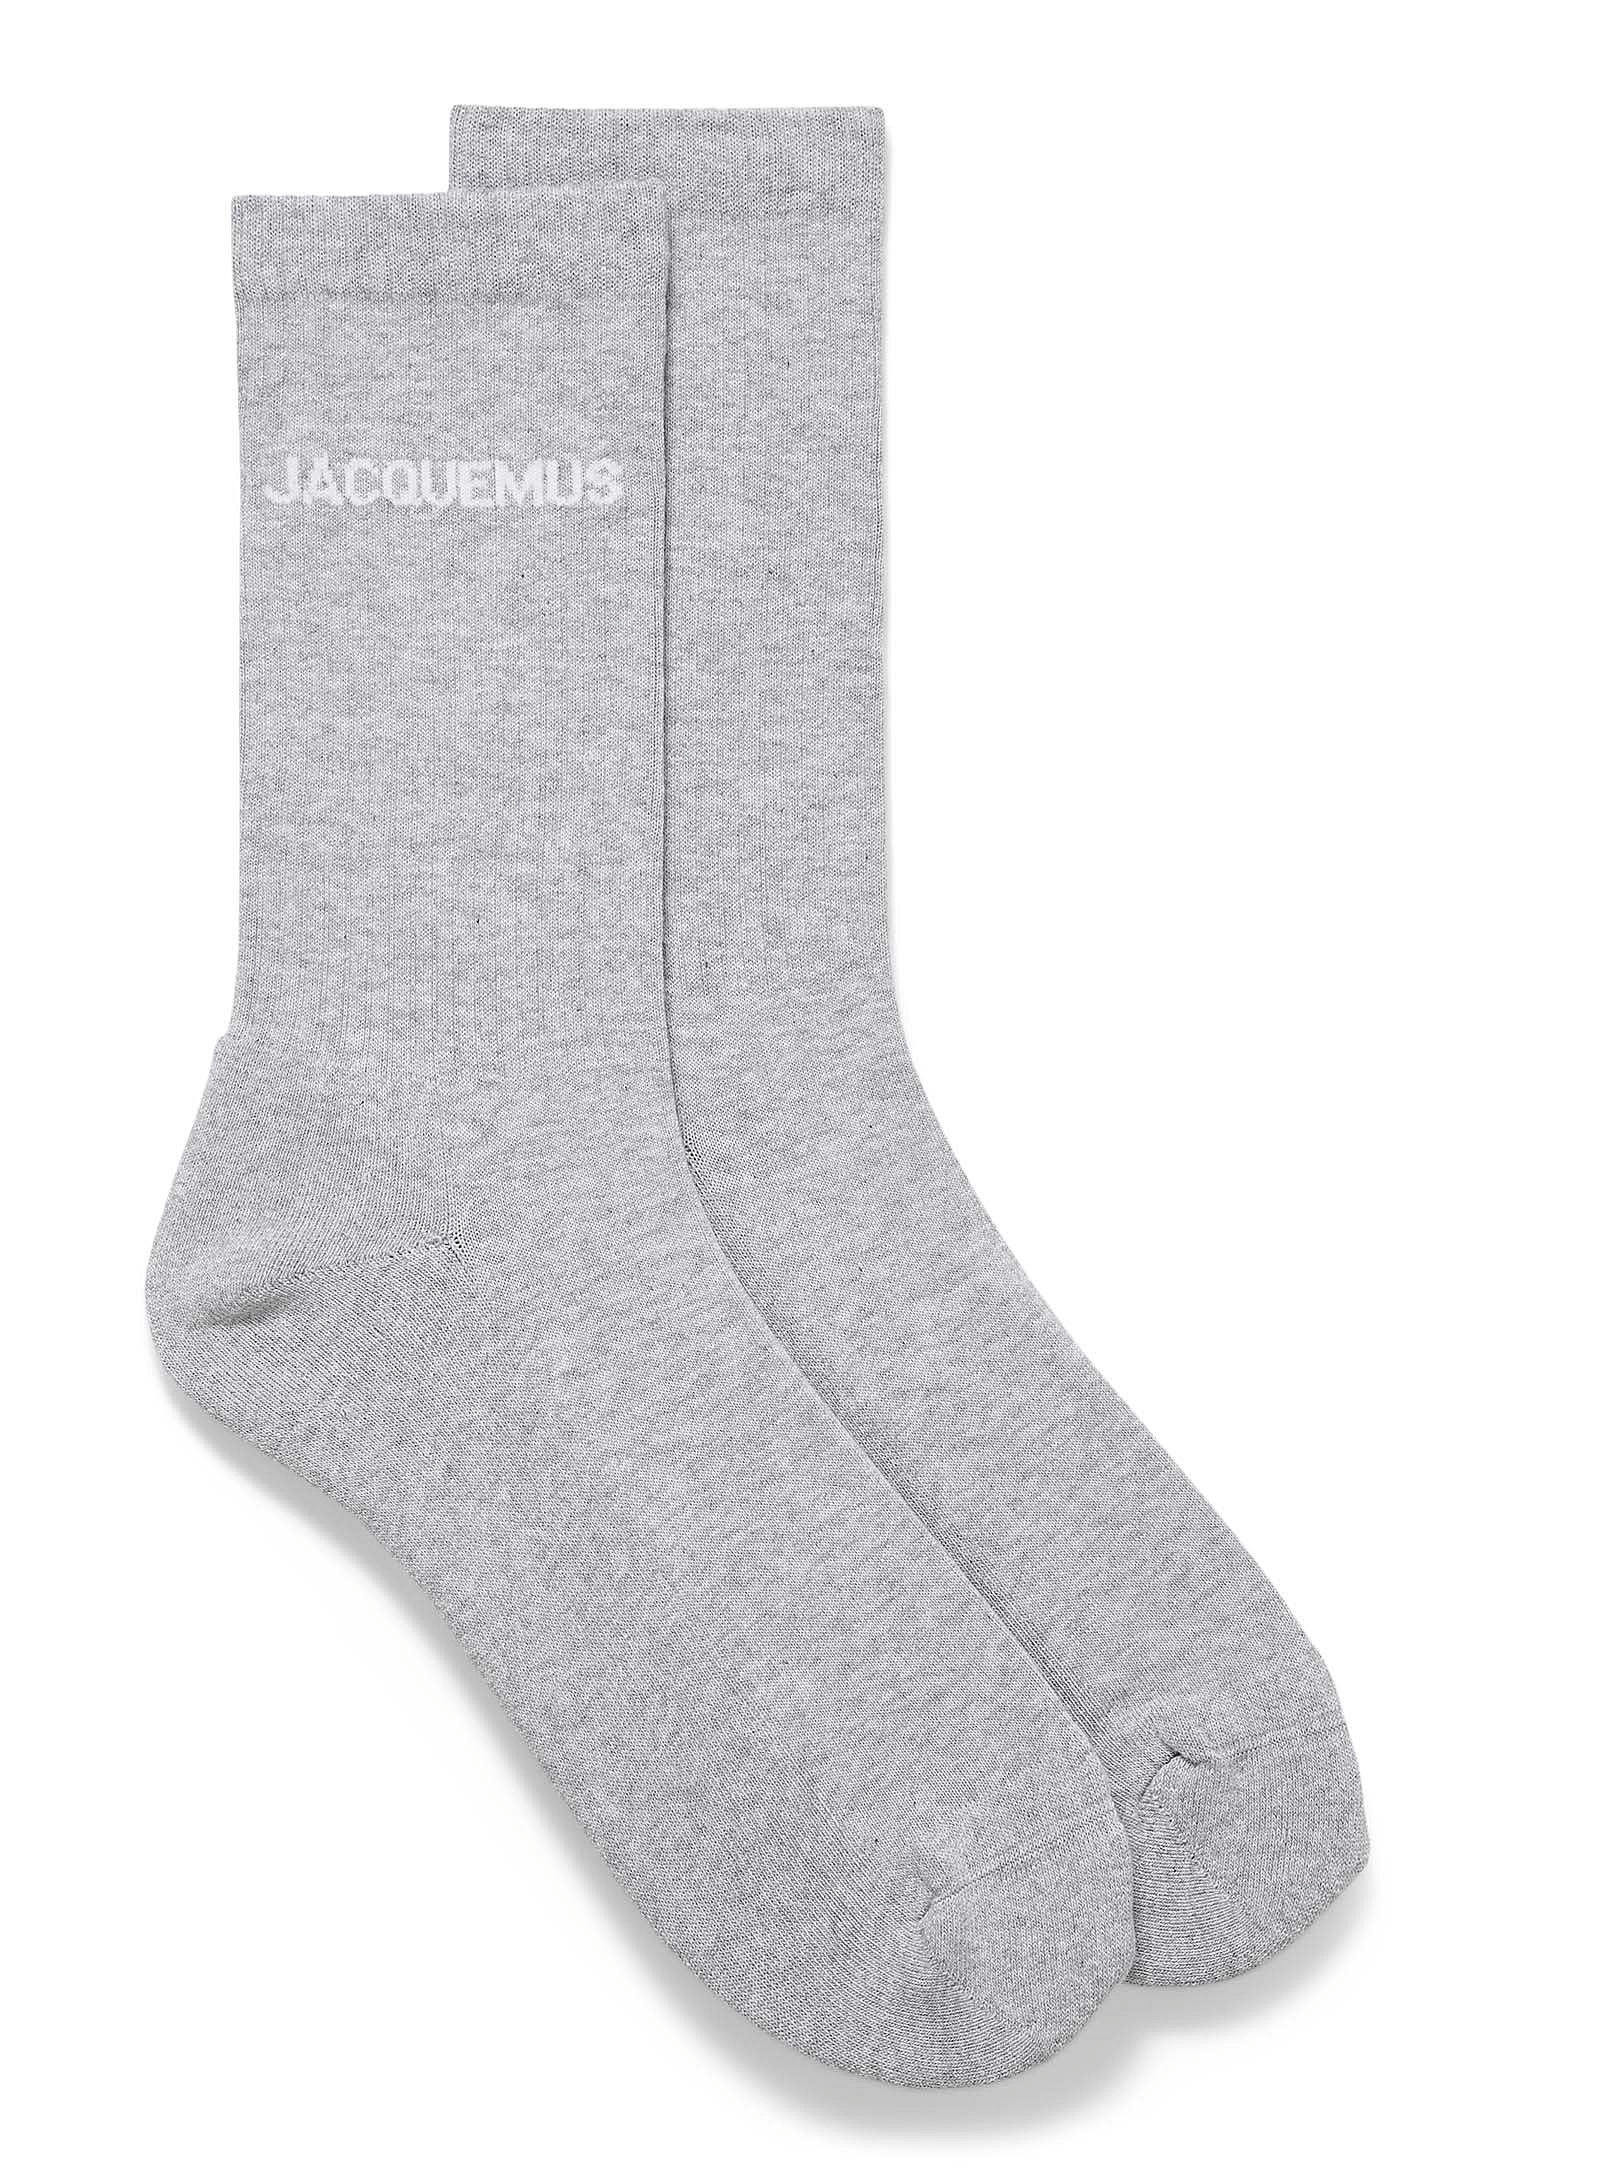 Jacquemus - La chaussette